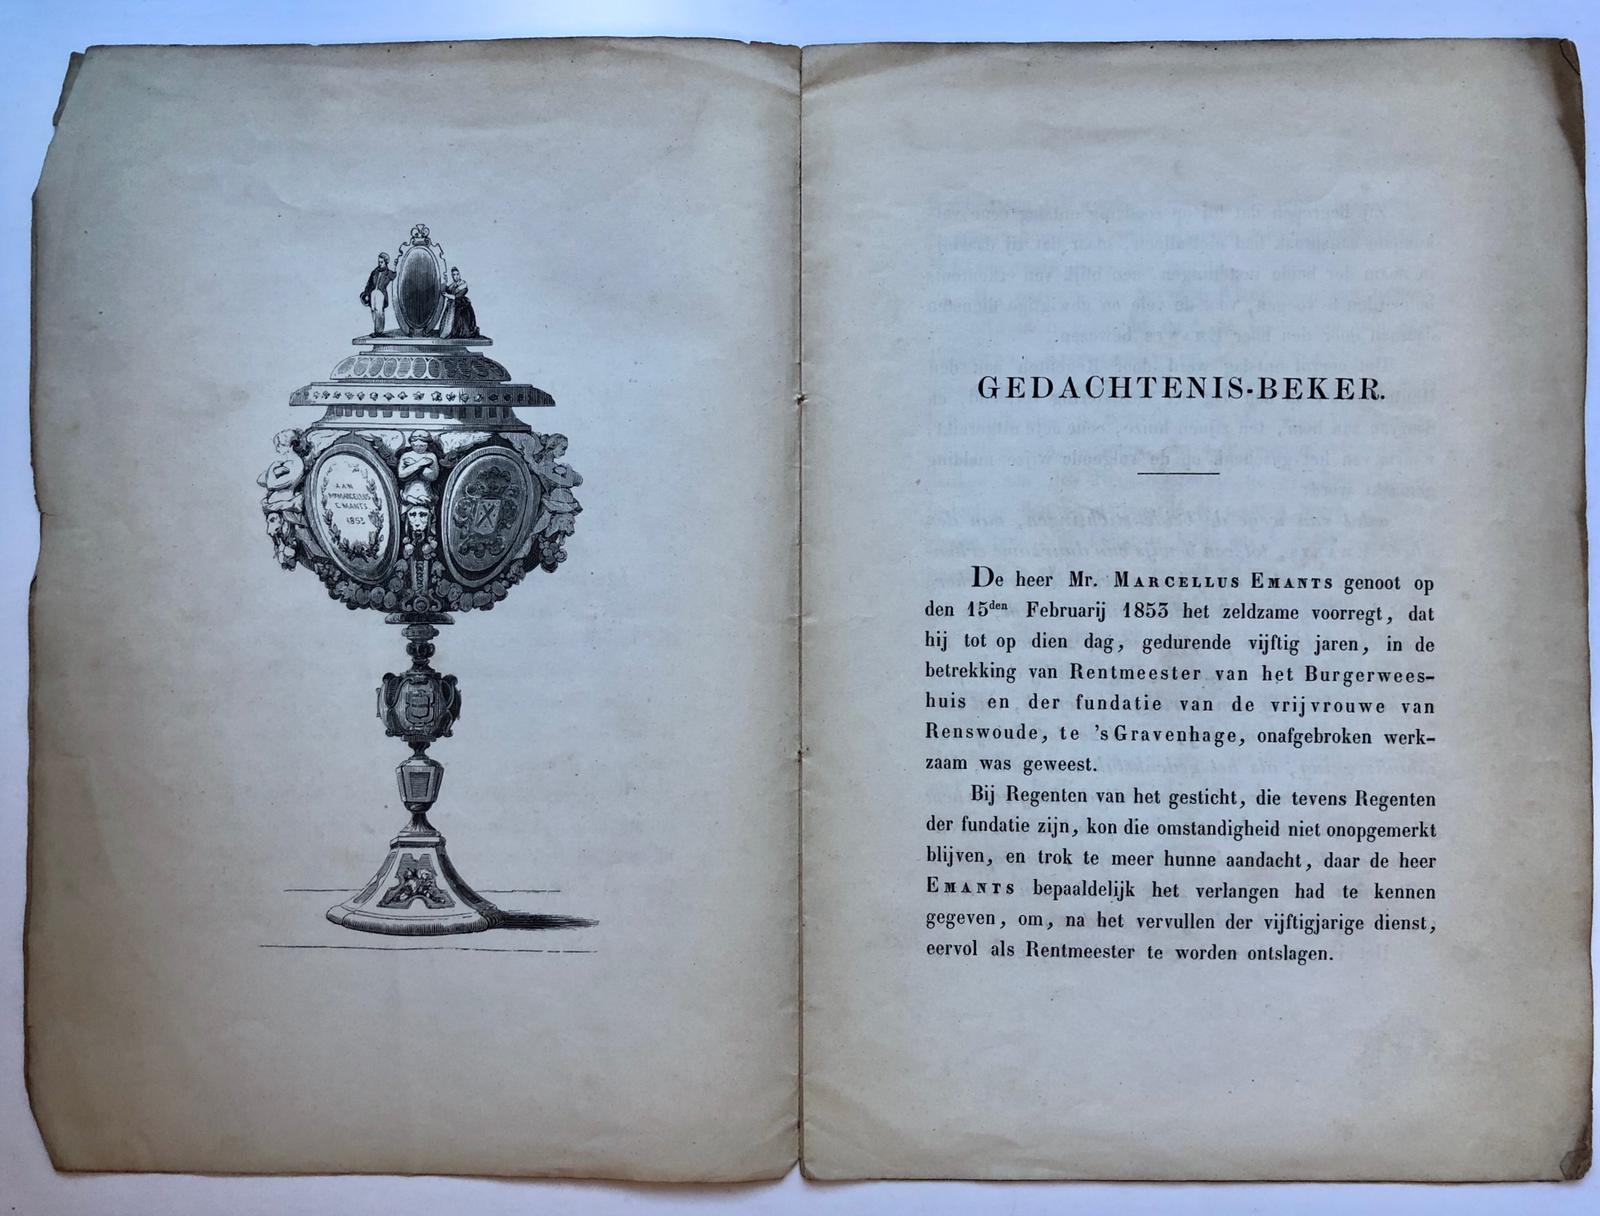 [Bouscholte, G.H.] - Gedachte-beker [aangeboden aan M.Emants in 1853, als scheidend rentmeester van Burgerweeshuis en fundatie van Renswoude te 's-Gravenhage], 's-Gravenhage 1853, 8 pag. met afb. van de beker (een houtsnede van I. Weissenbruch).